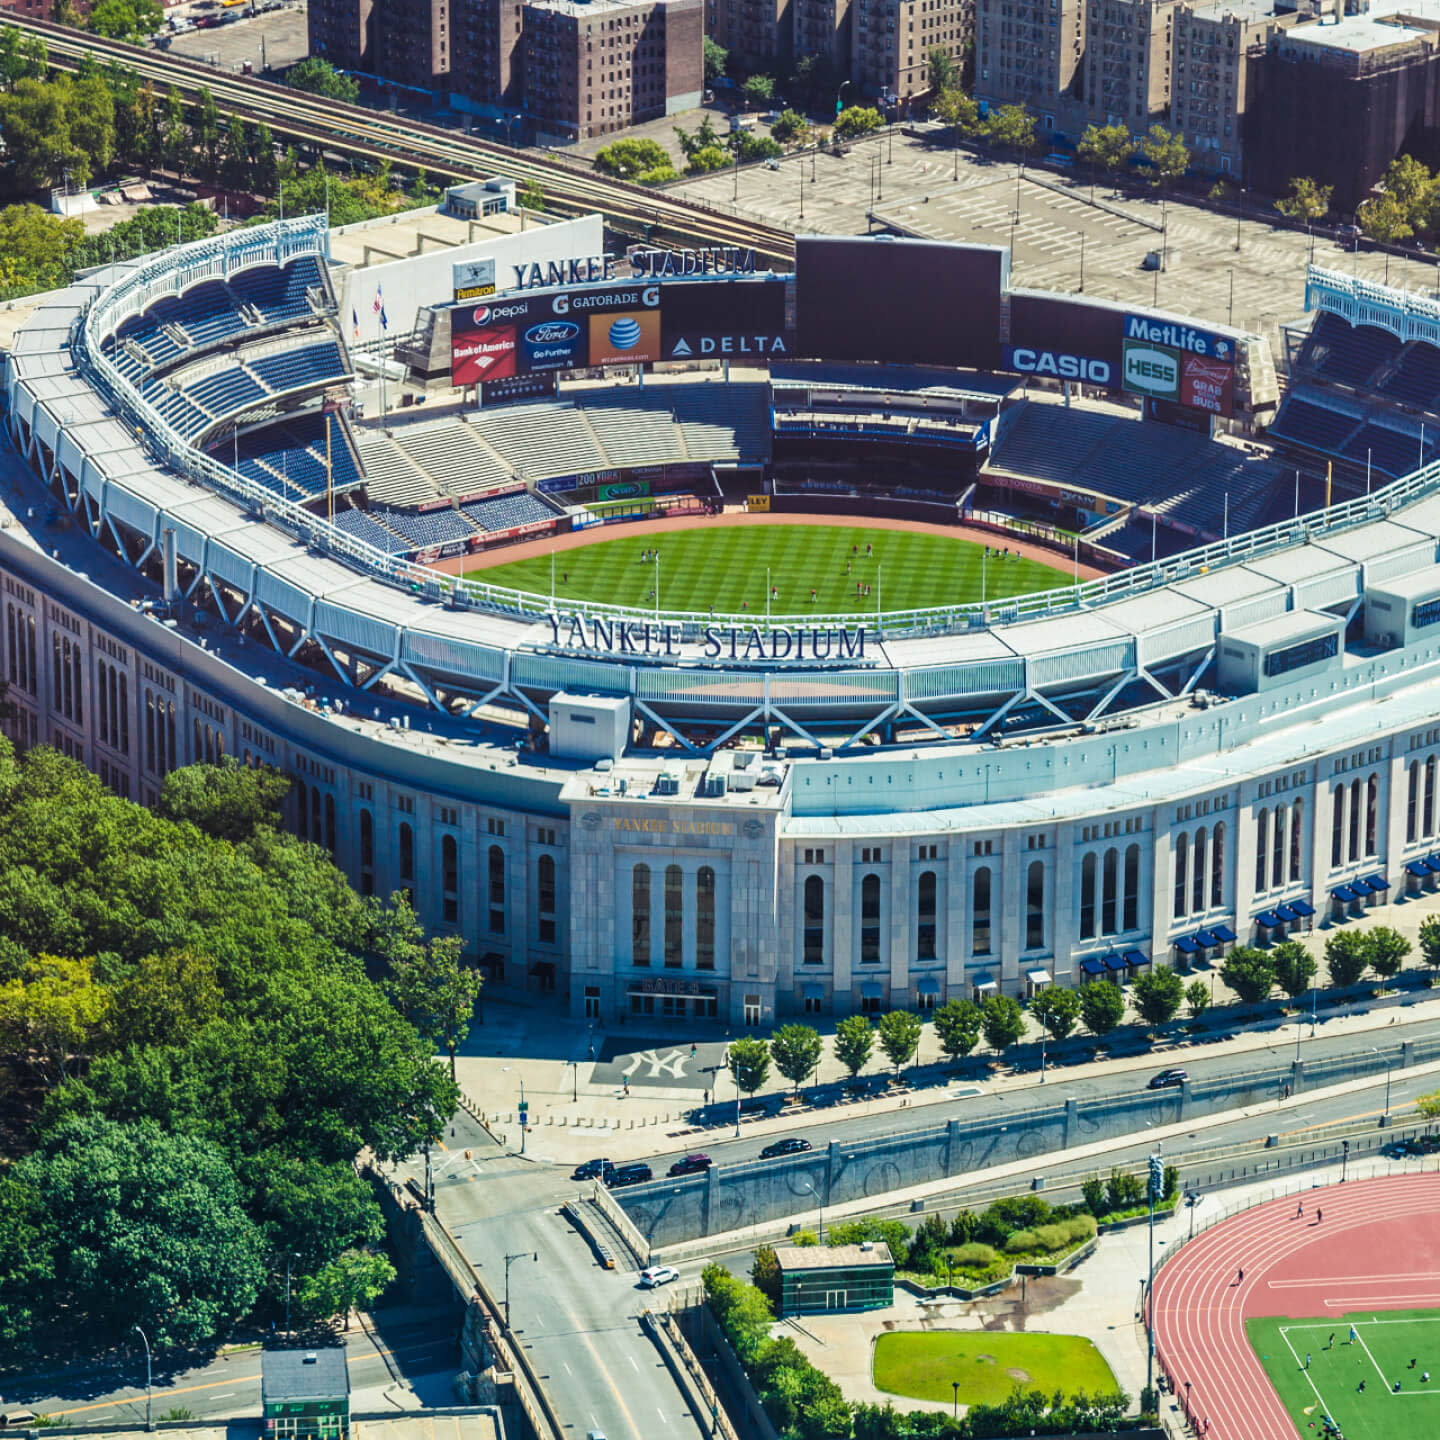 Aerial view of Yankee Stadium